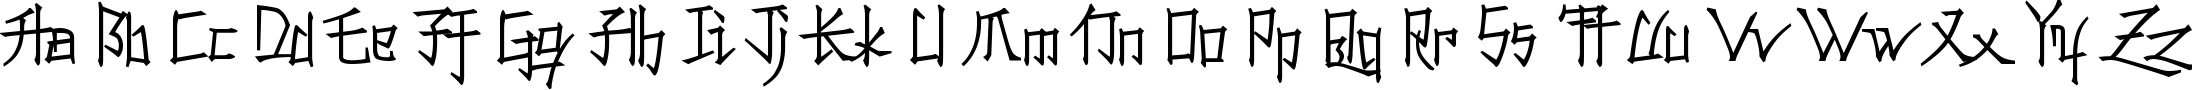 Пример написания английского алфавита шрифтом Konfuciuz